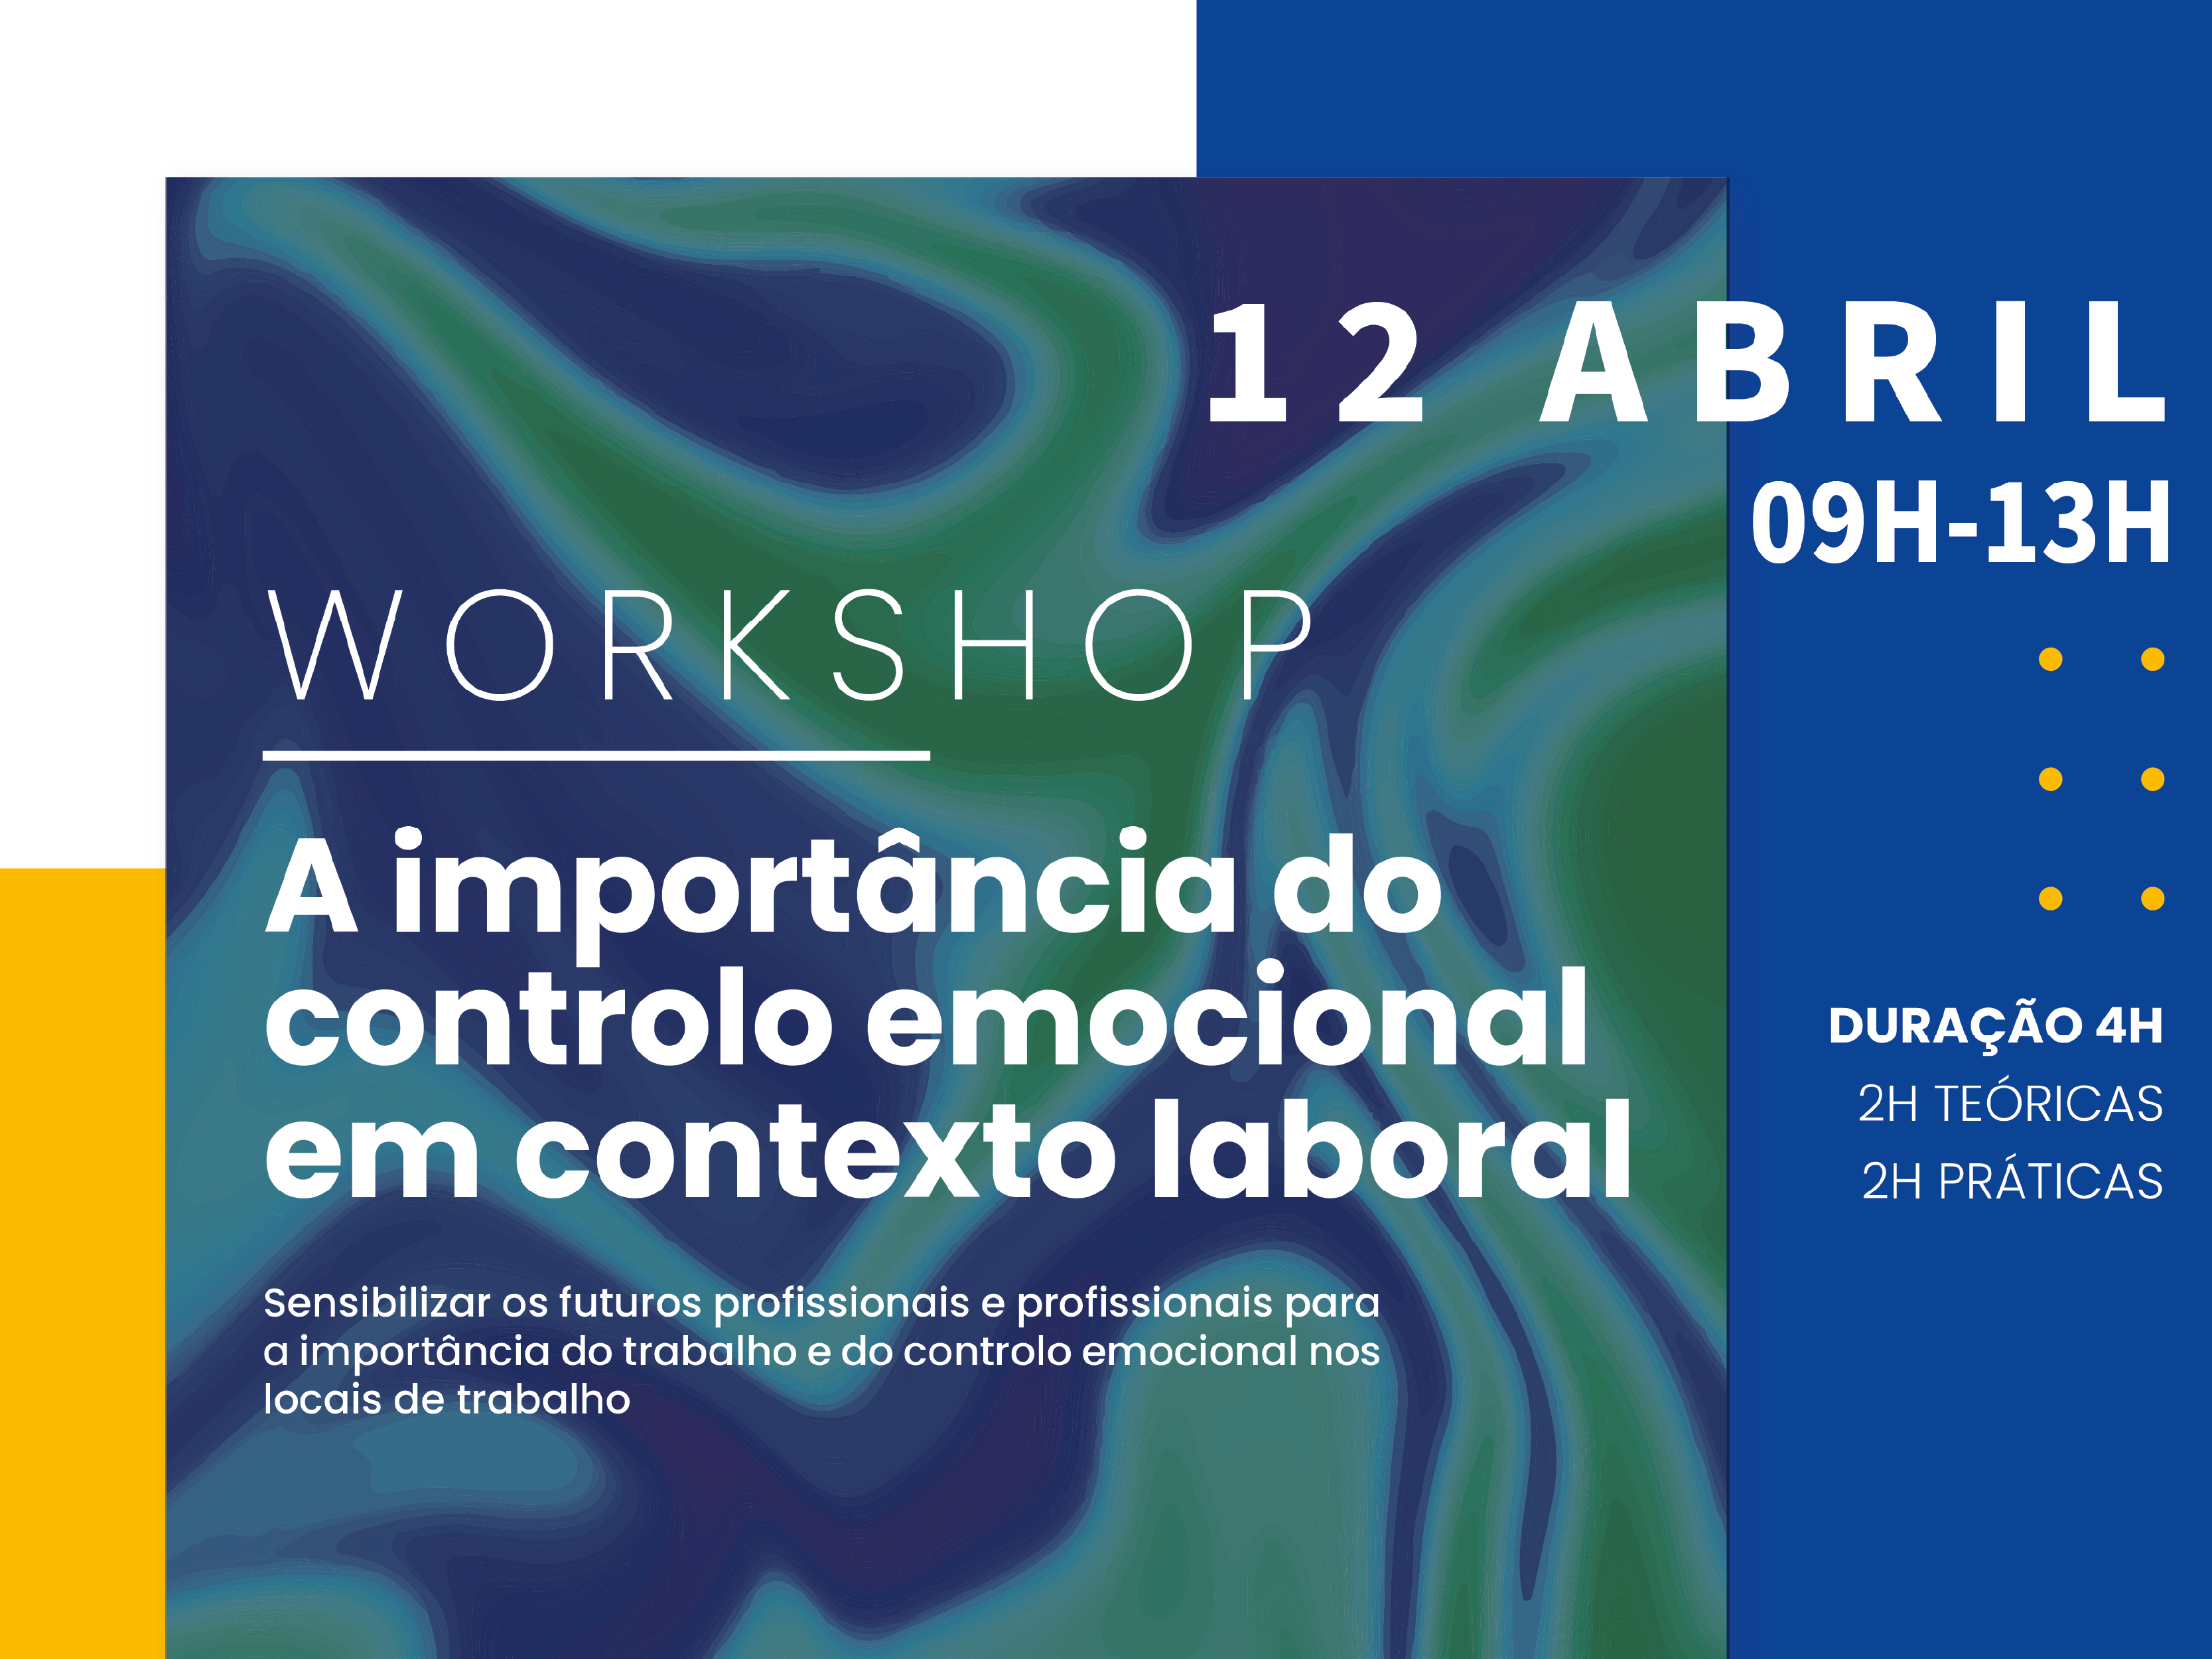 Workshop | A importância do controlo emocional em contexto laboral